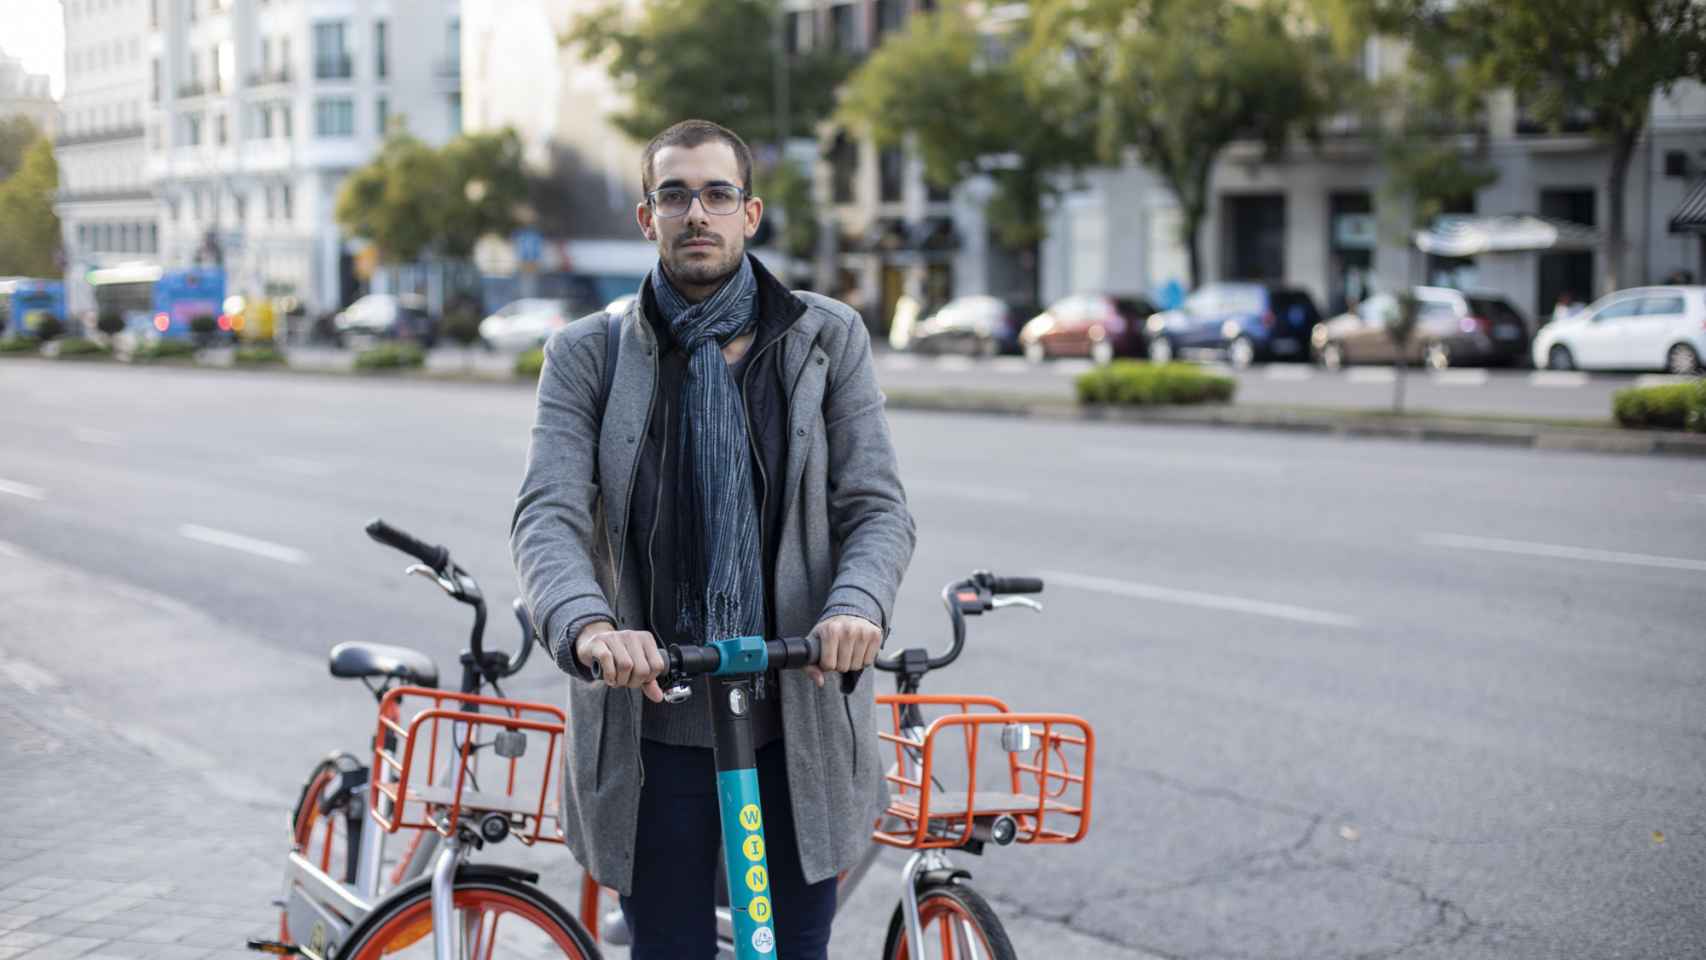 ignacio utiliza bici compartida, pero aboga por un mejor uso de las normas.